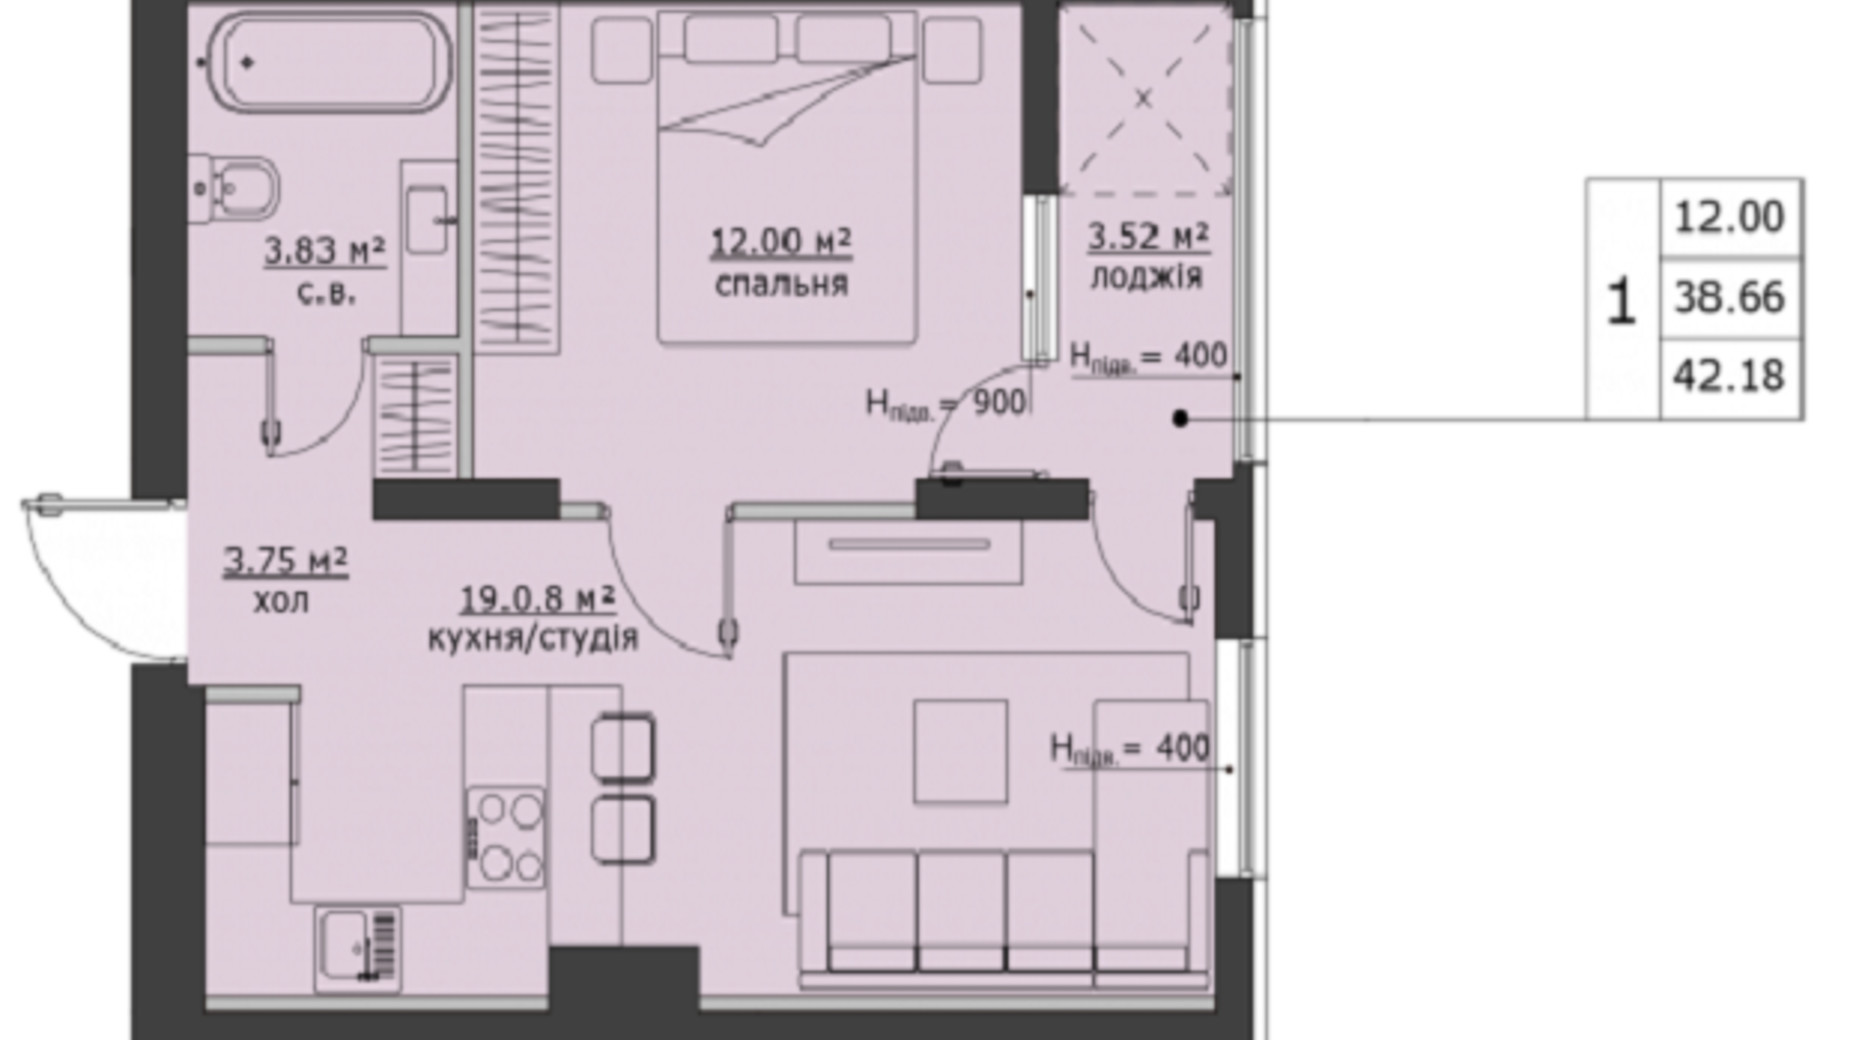 Планировка 1-комнатной квартиры в ЖК Бетховен 42.18 м², фото 266474